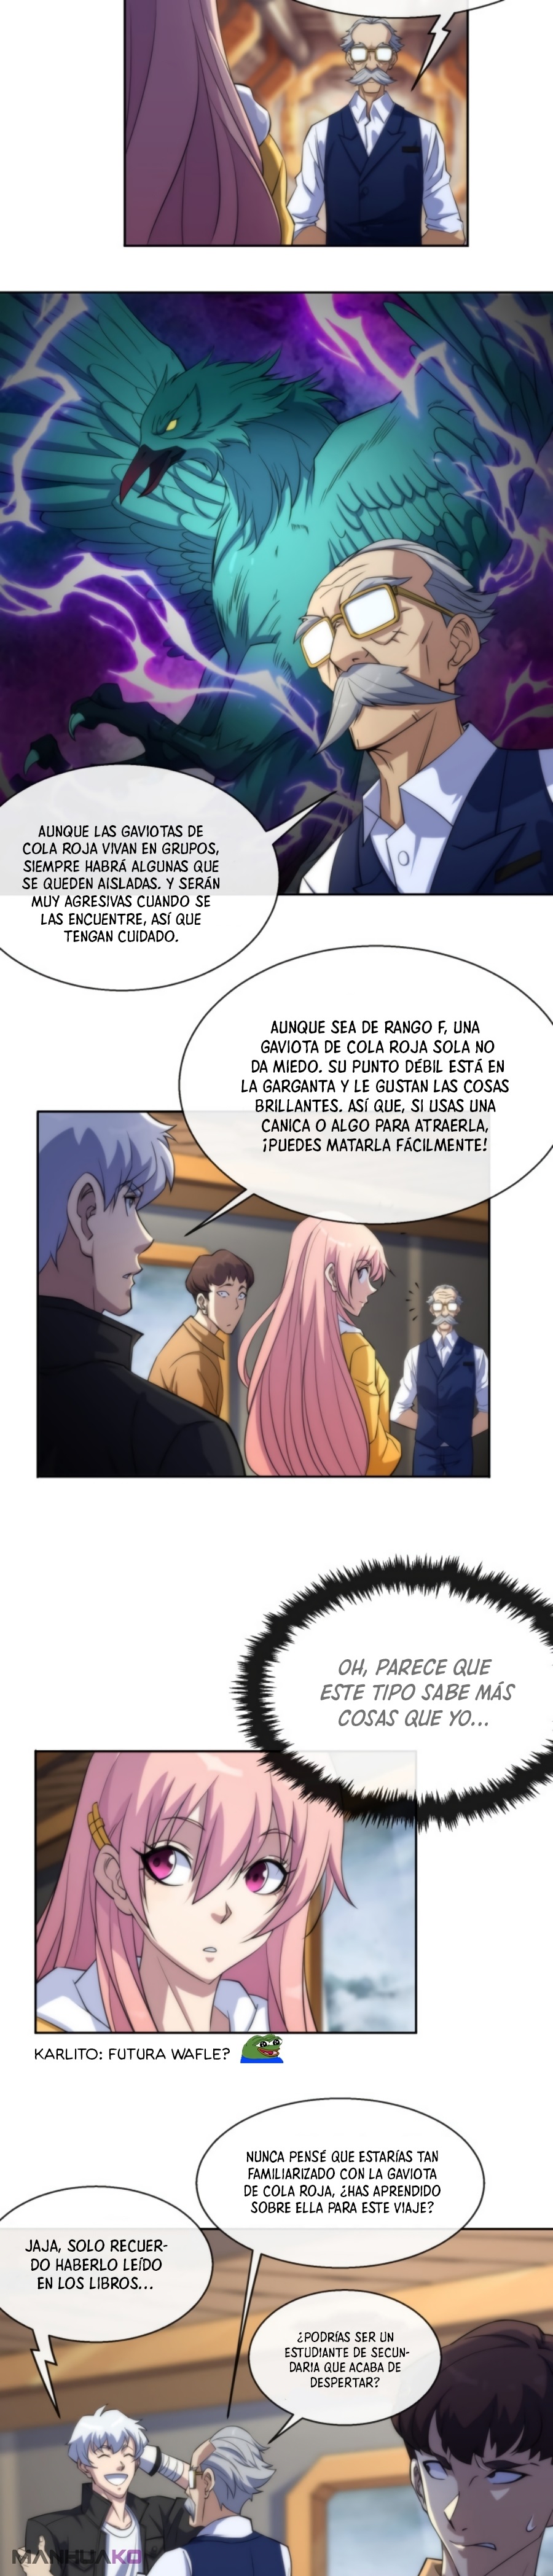 Manga Rey de las runas Chapter 13 image number 13